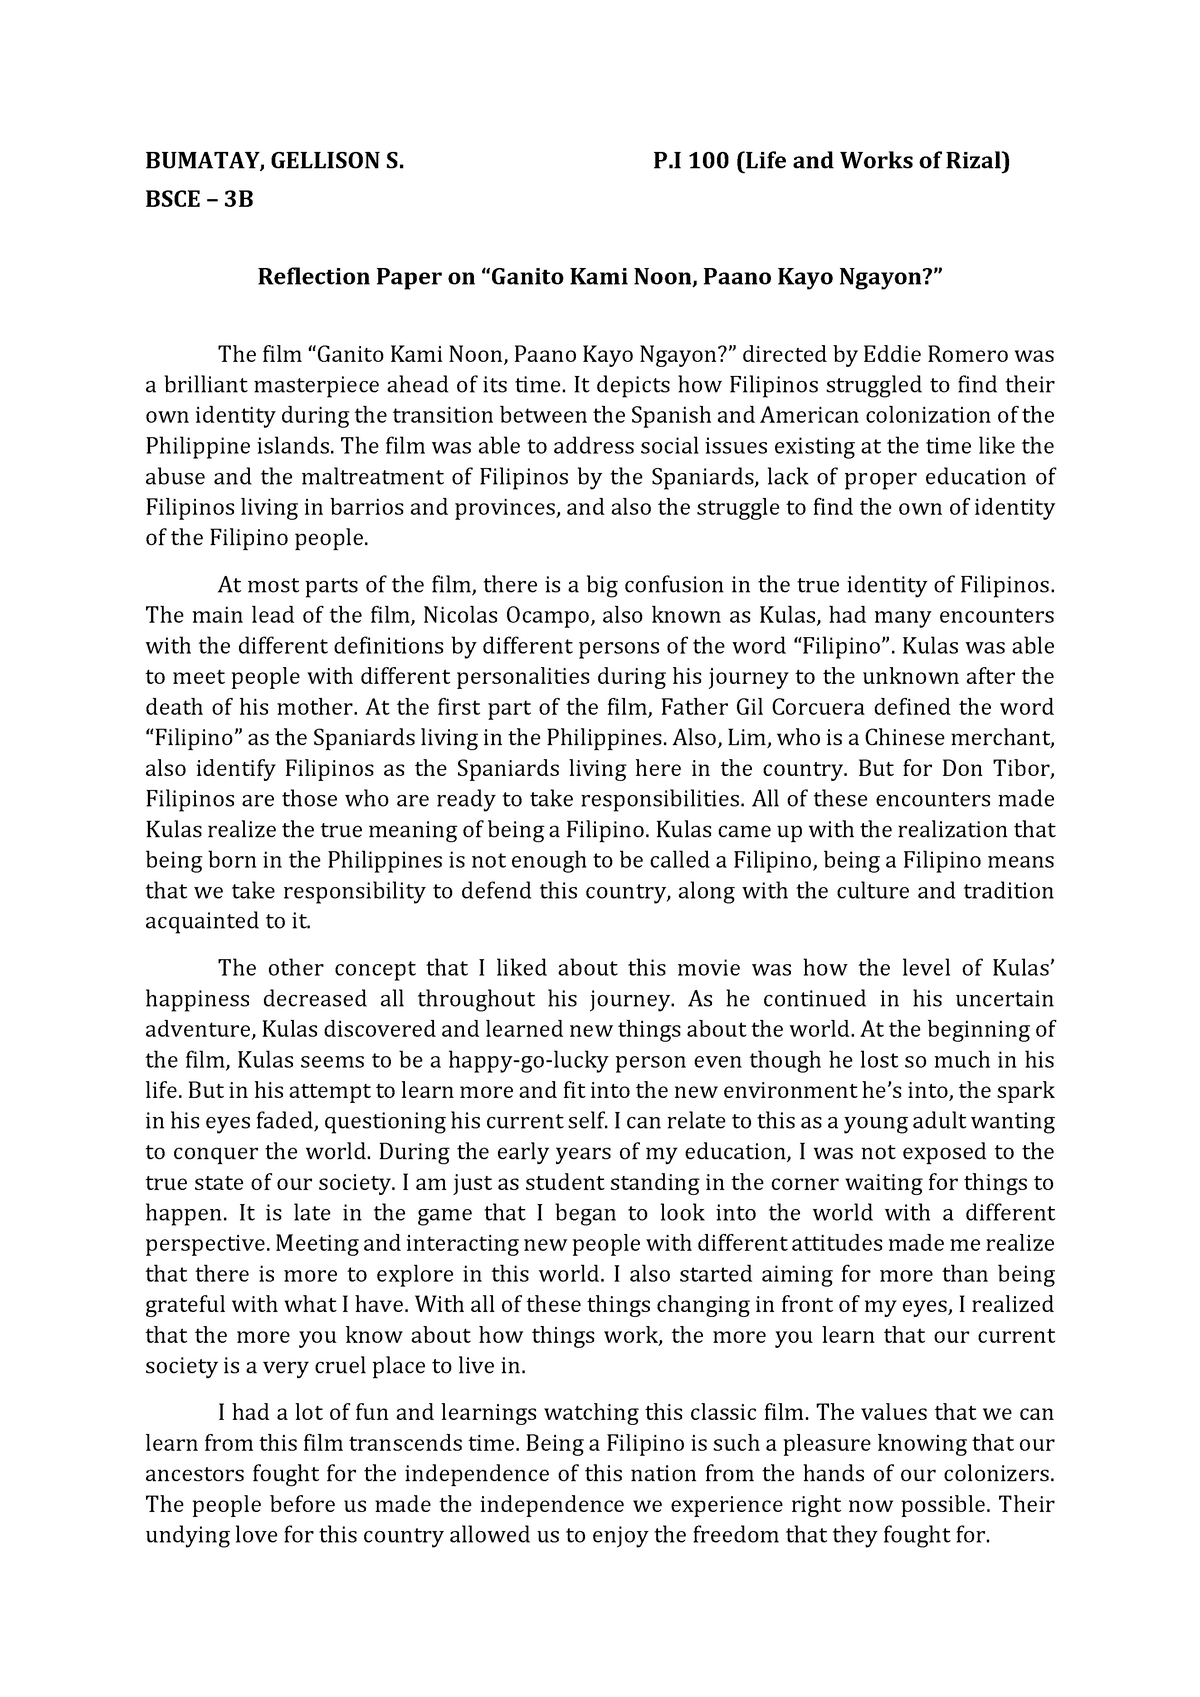 Reflection Paper: Ganito Kami Noon, Paano Kayo Ngayon? - BS Civil